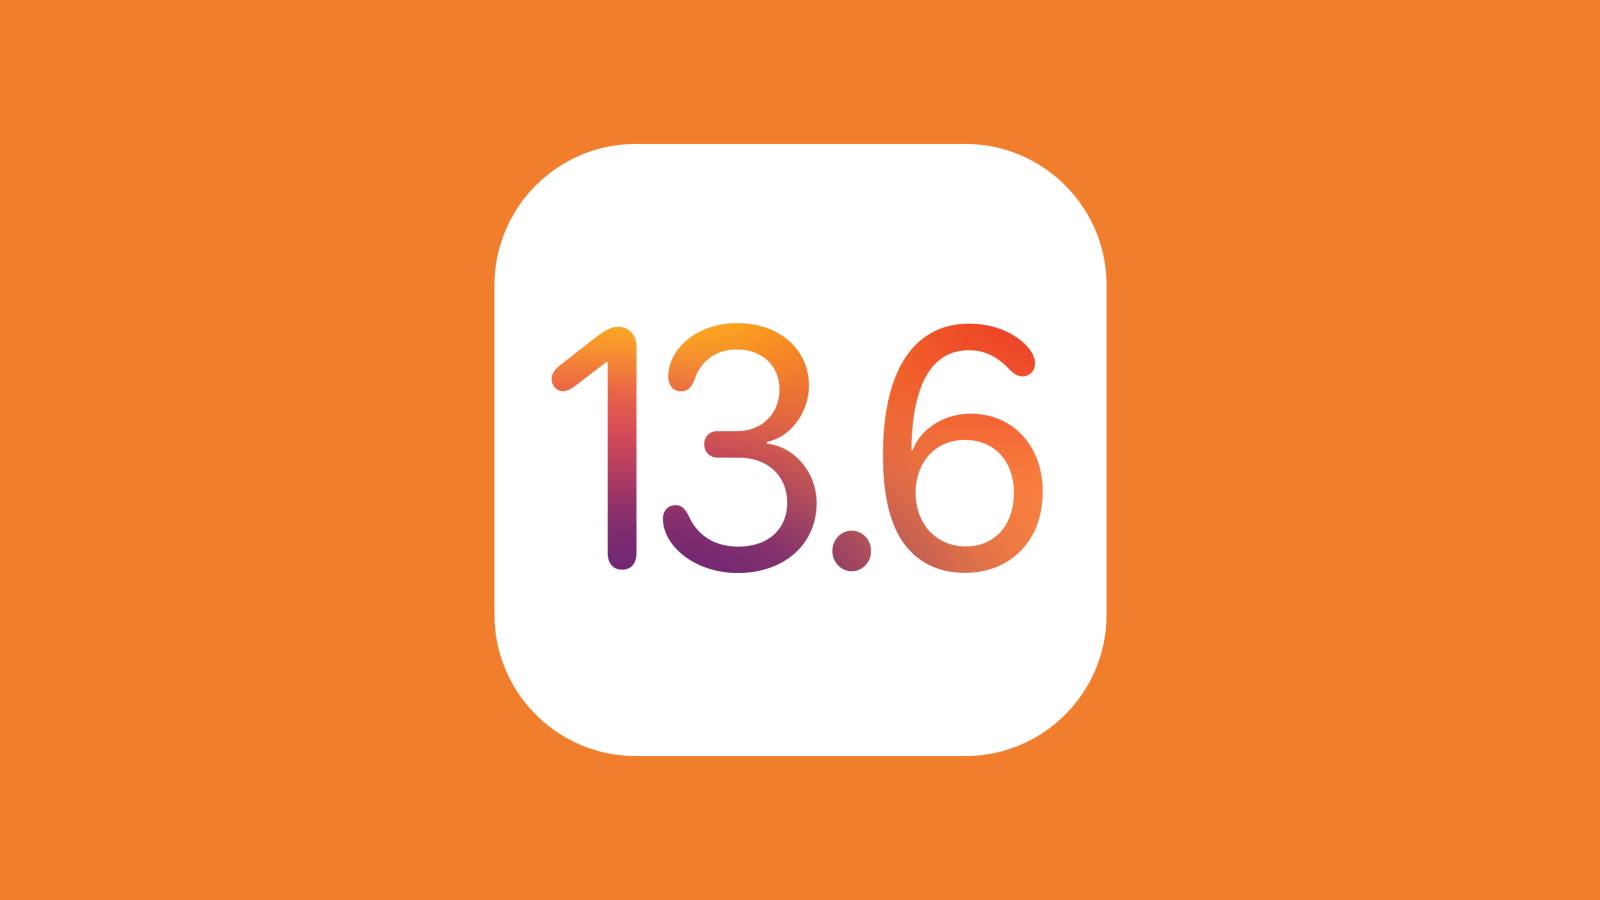 iOS 13.6.1